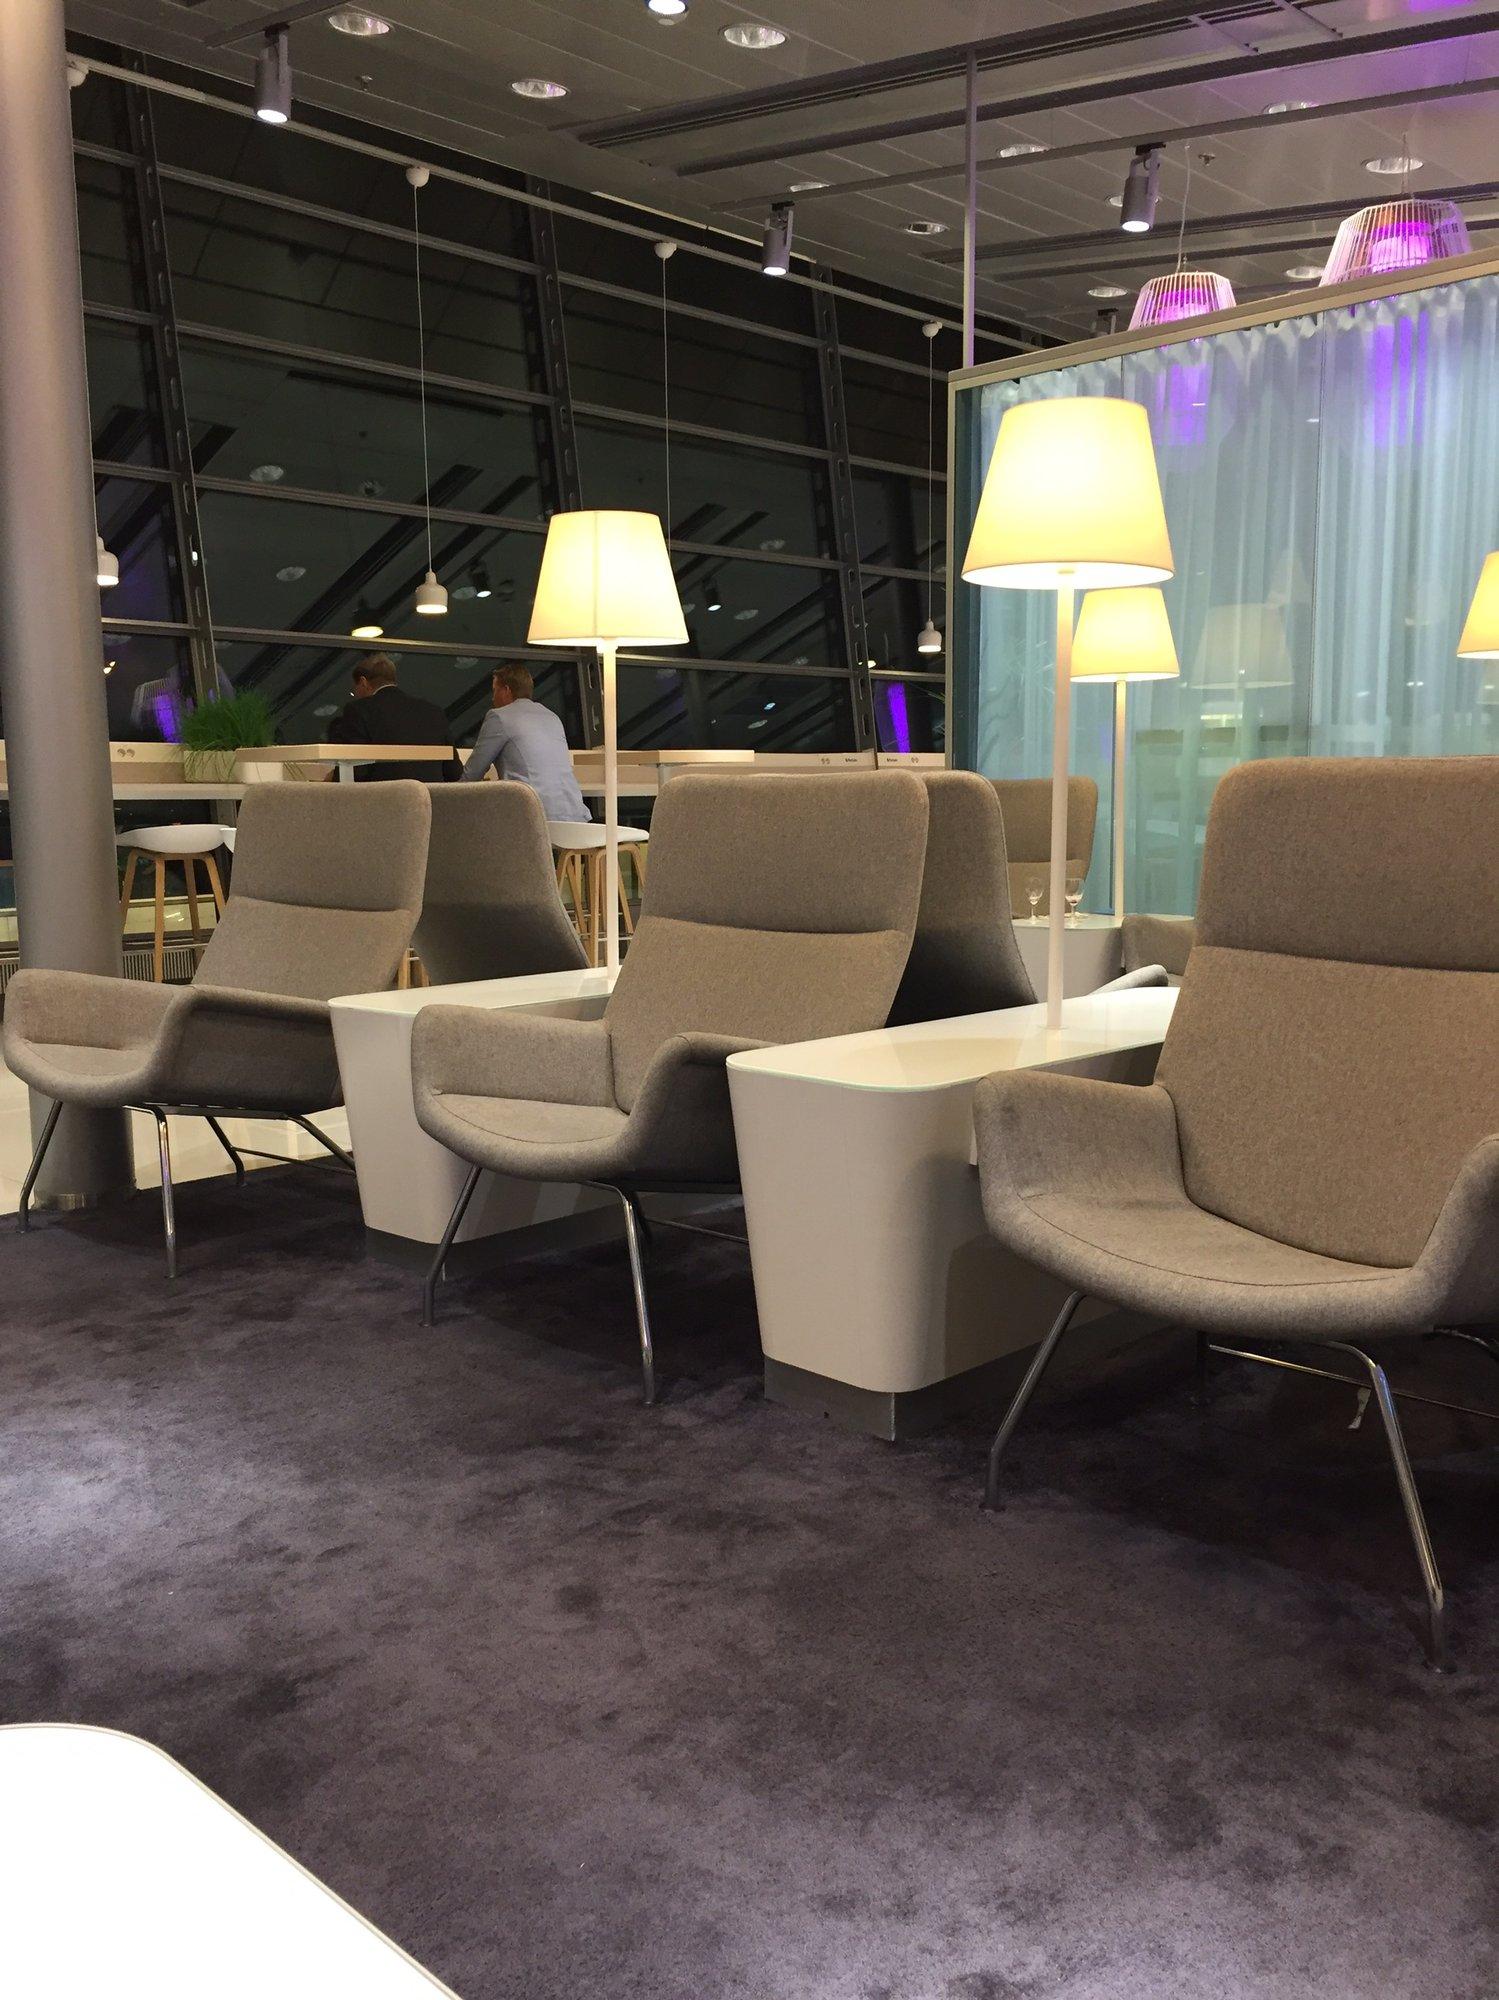 Finnair Lounge image 15 of 38